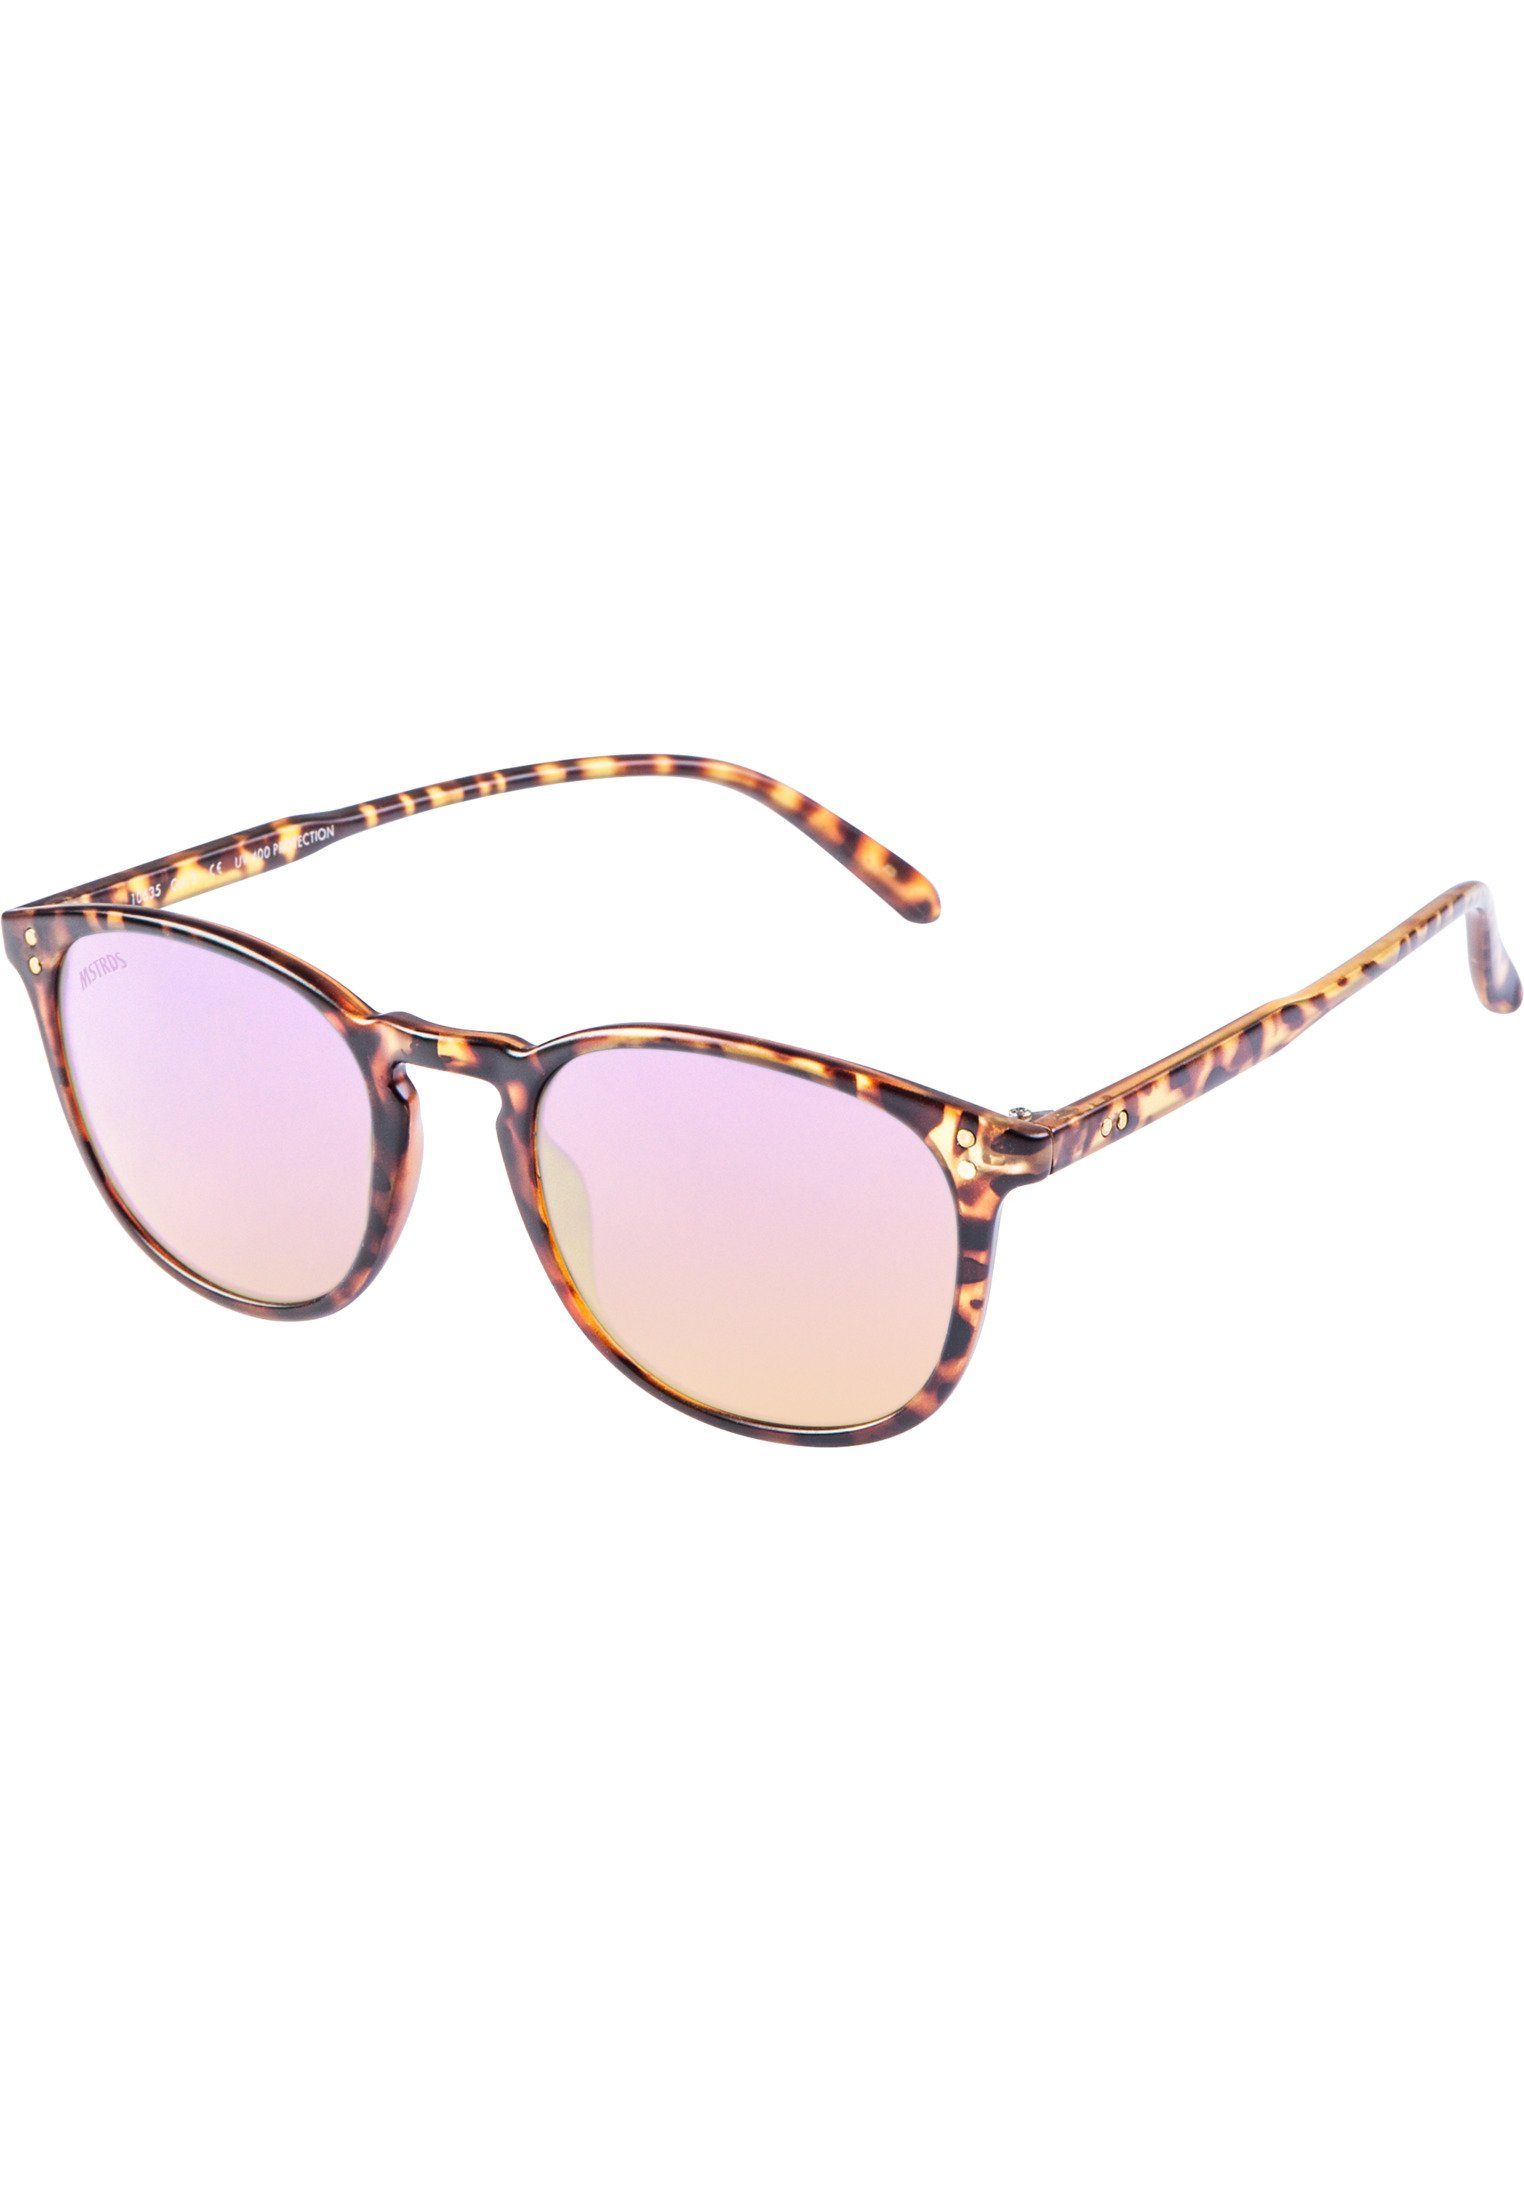 Sonnenbrille MSTRDS havanna/rosé Sunglasses Arthur Accessoires Youth